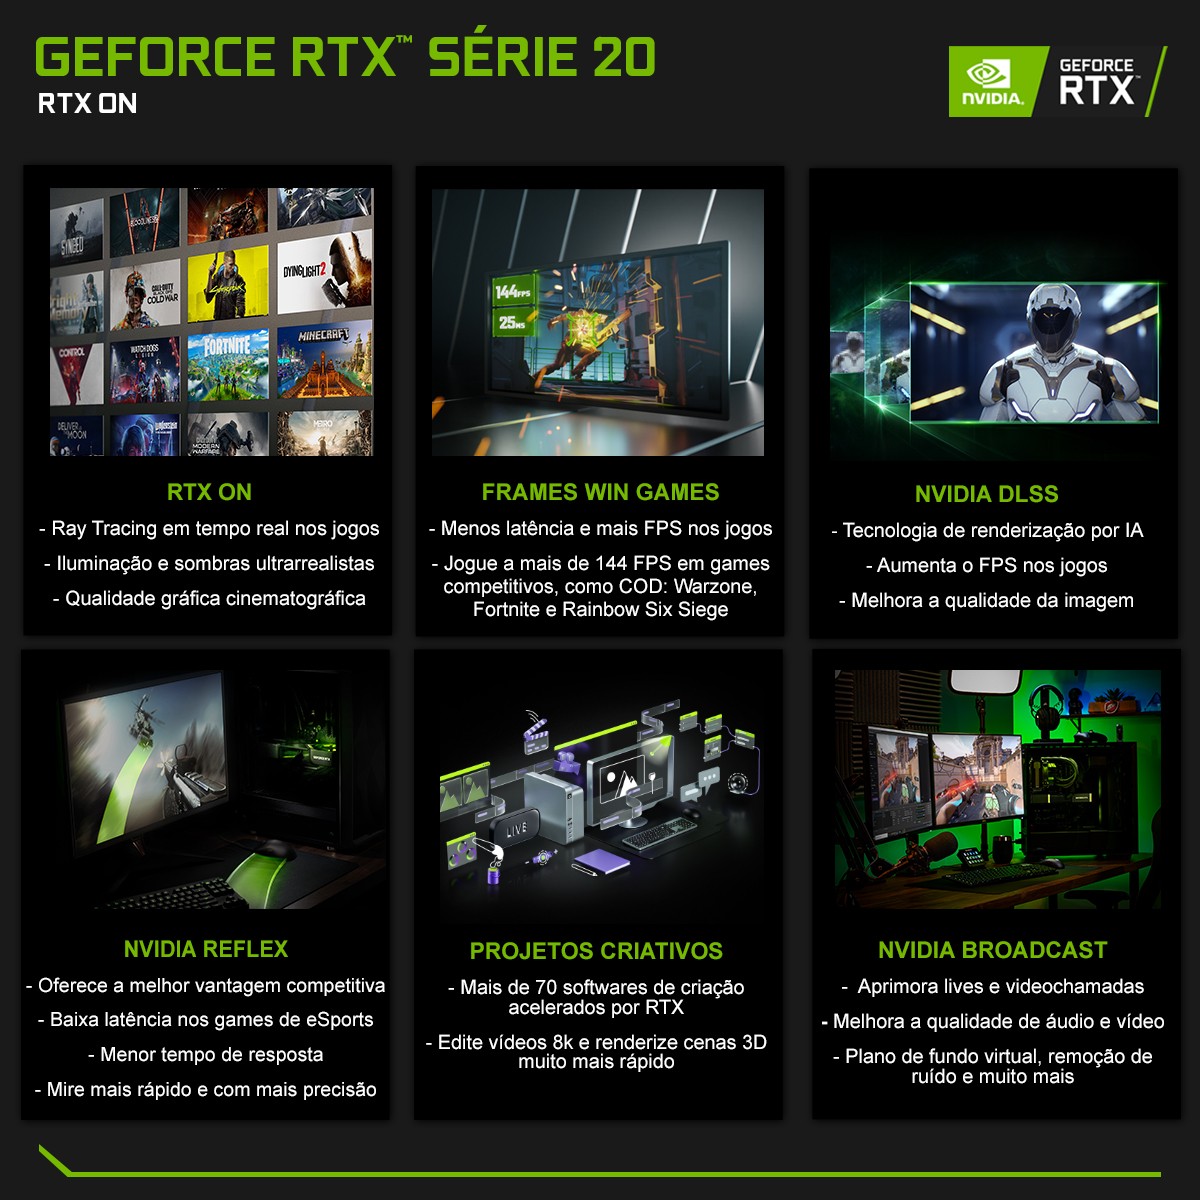 Placa de Video MSI NVIDIA GeForce RTX 2080 Sea Hawk X, 8GB GDDR6, 256Bit, 912-V372-008